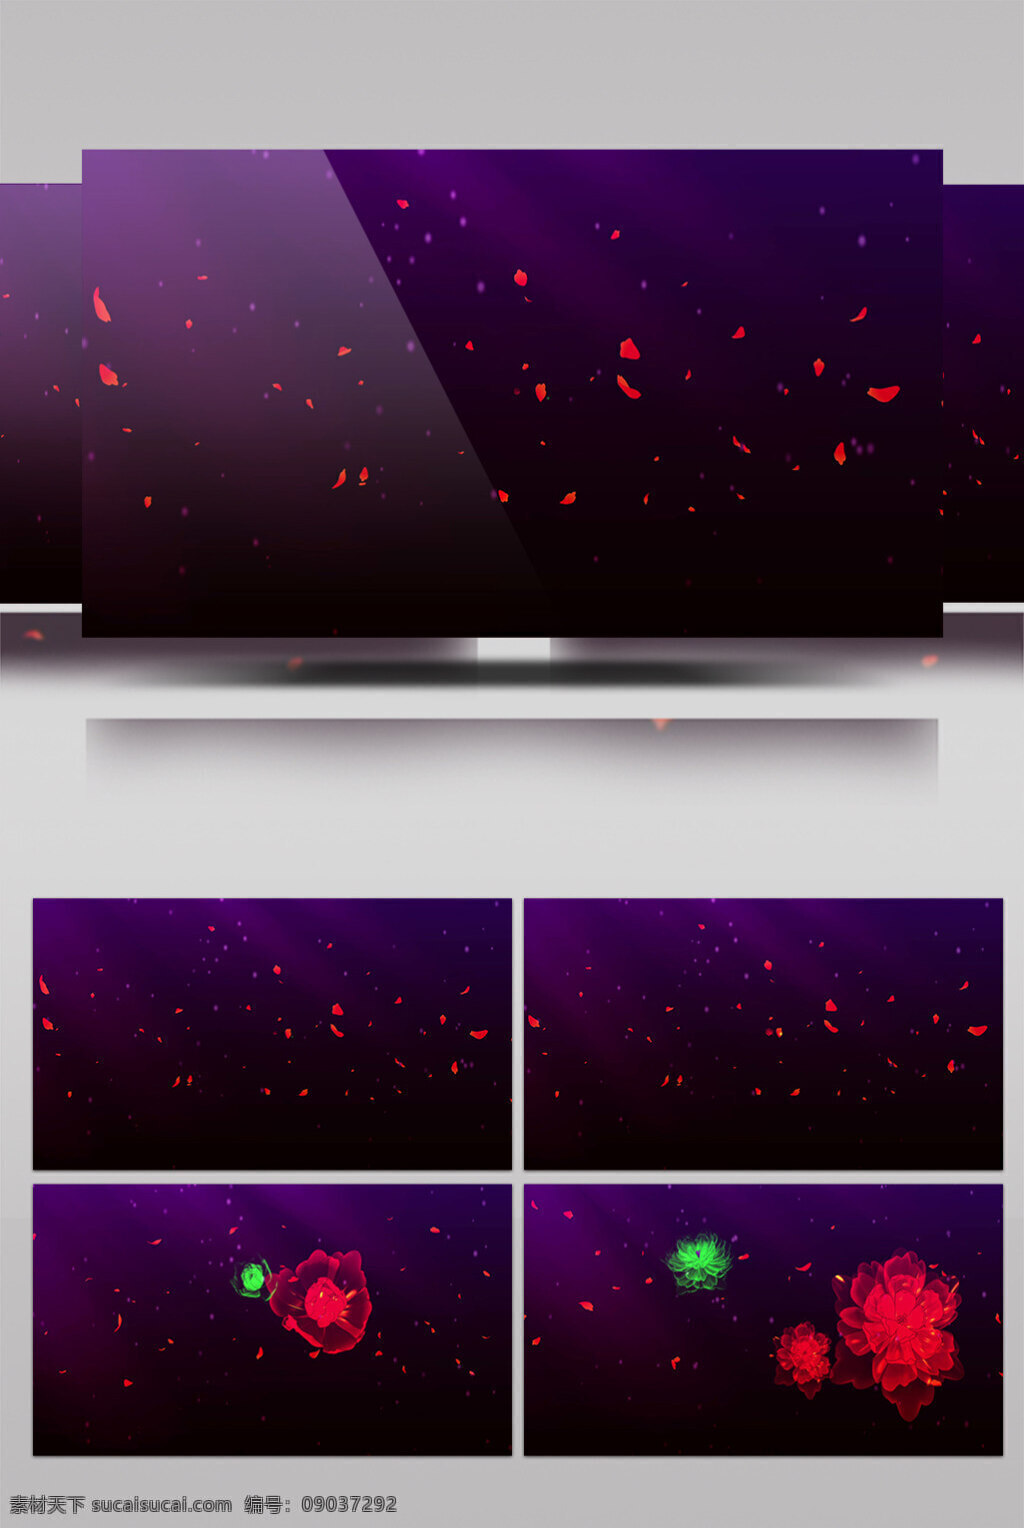 红色 光点 视频 光点花朵 玫瑰红 星空红点 生活实用 节目使用 实用背景素材 舞台背景素材